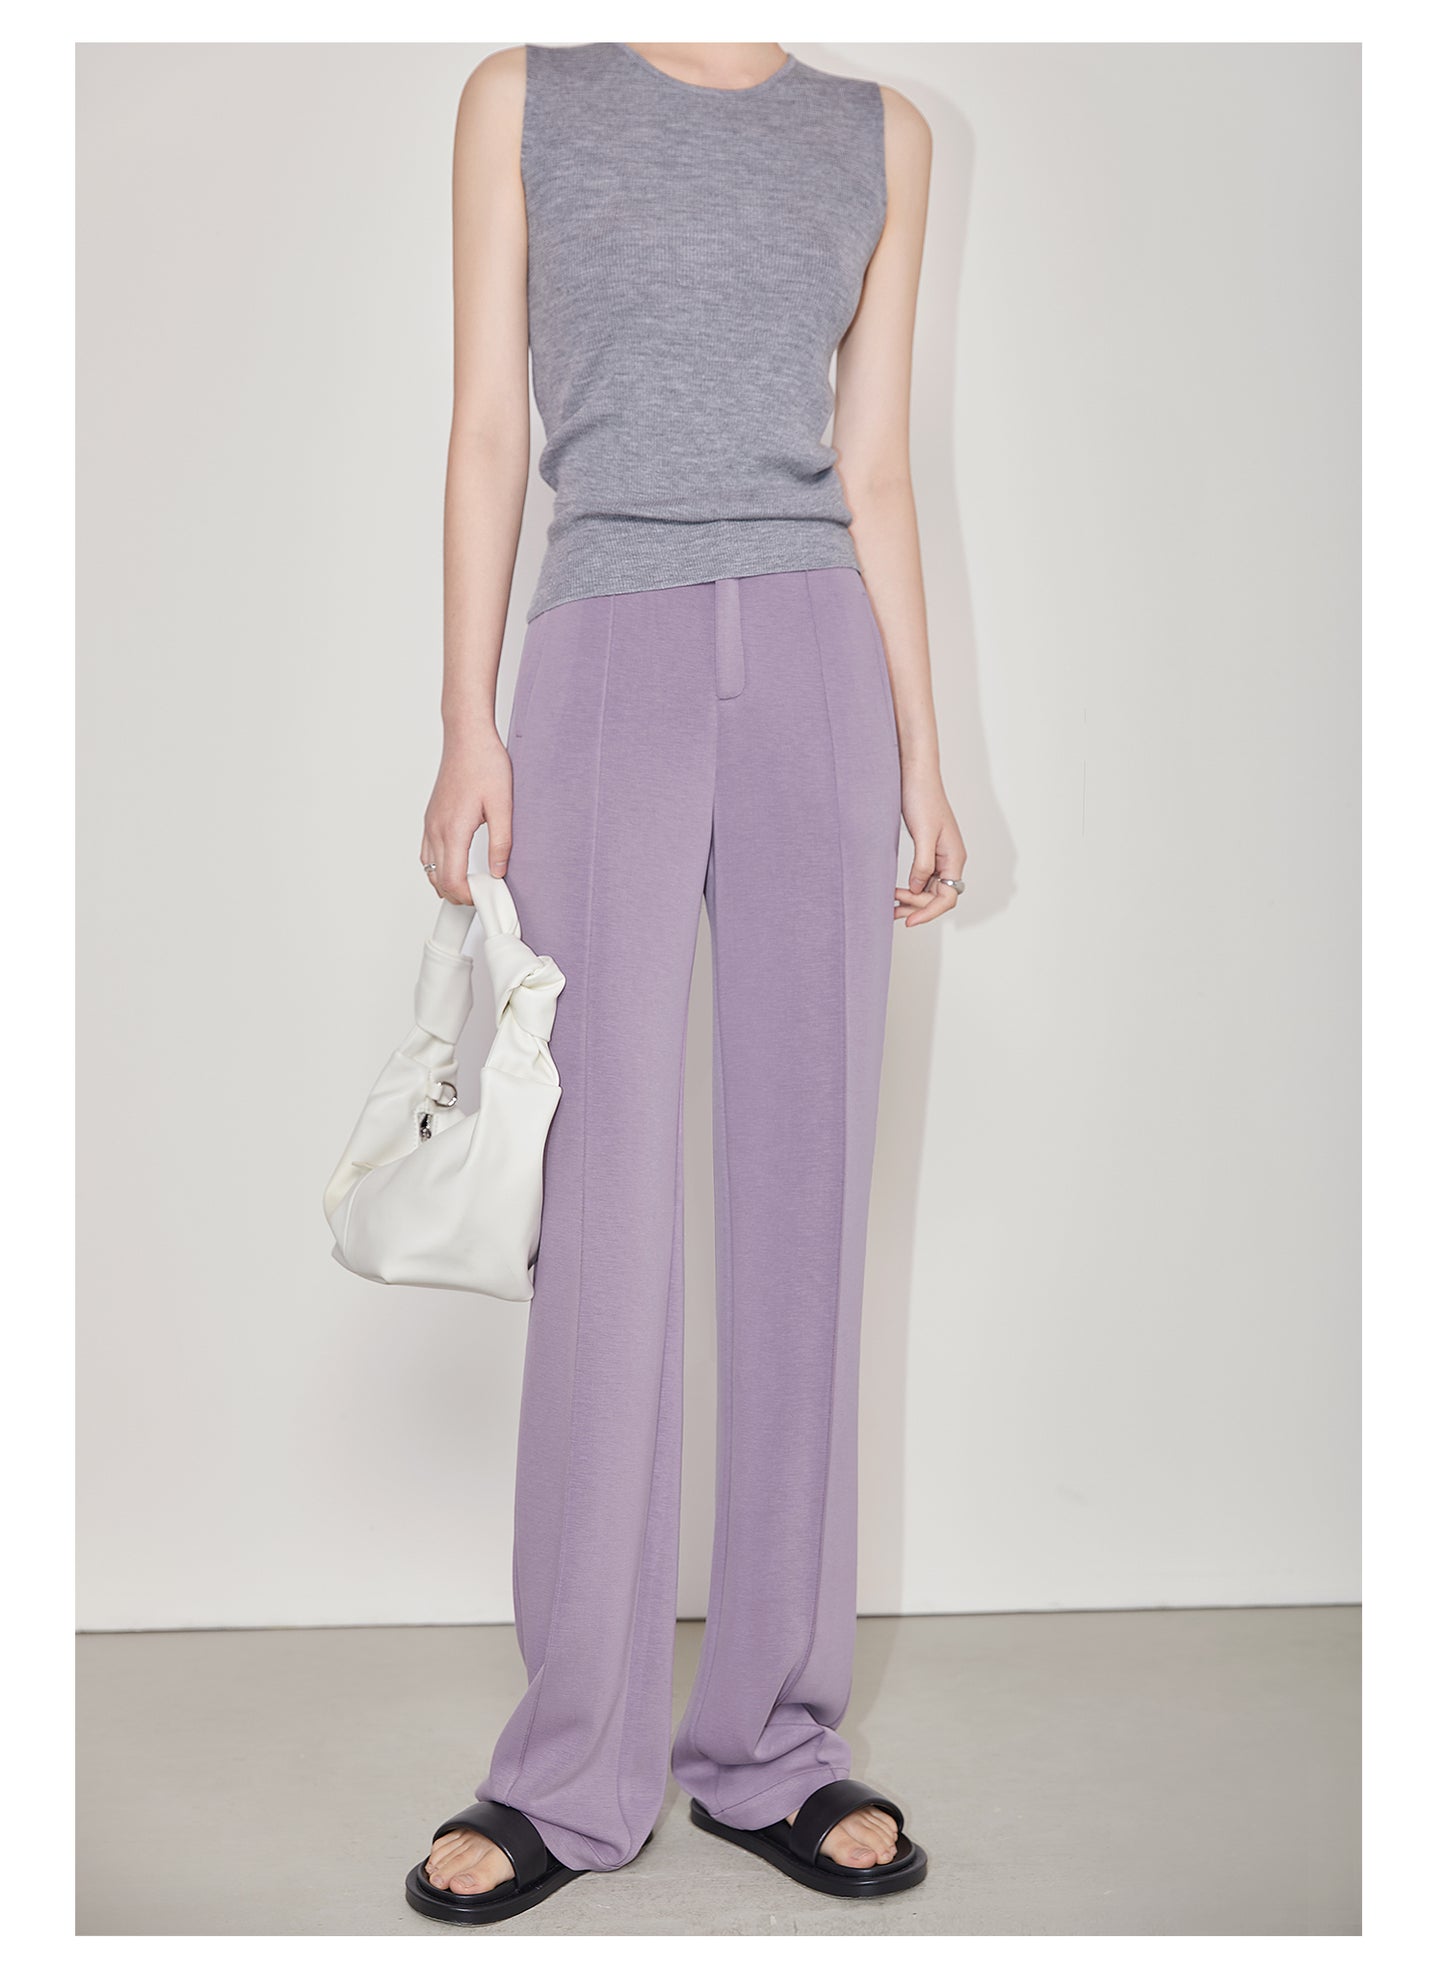 Soft drape elastic purple straight suit pants - Silva